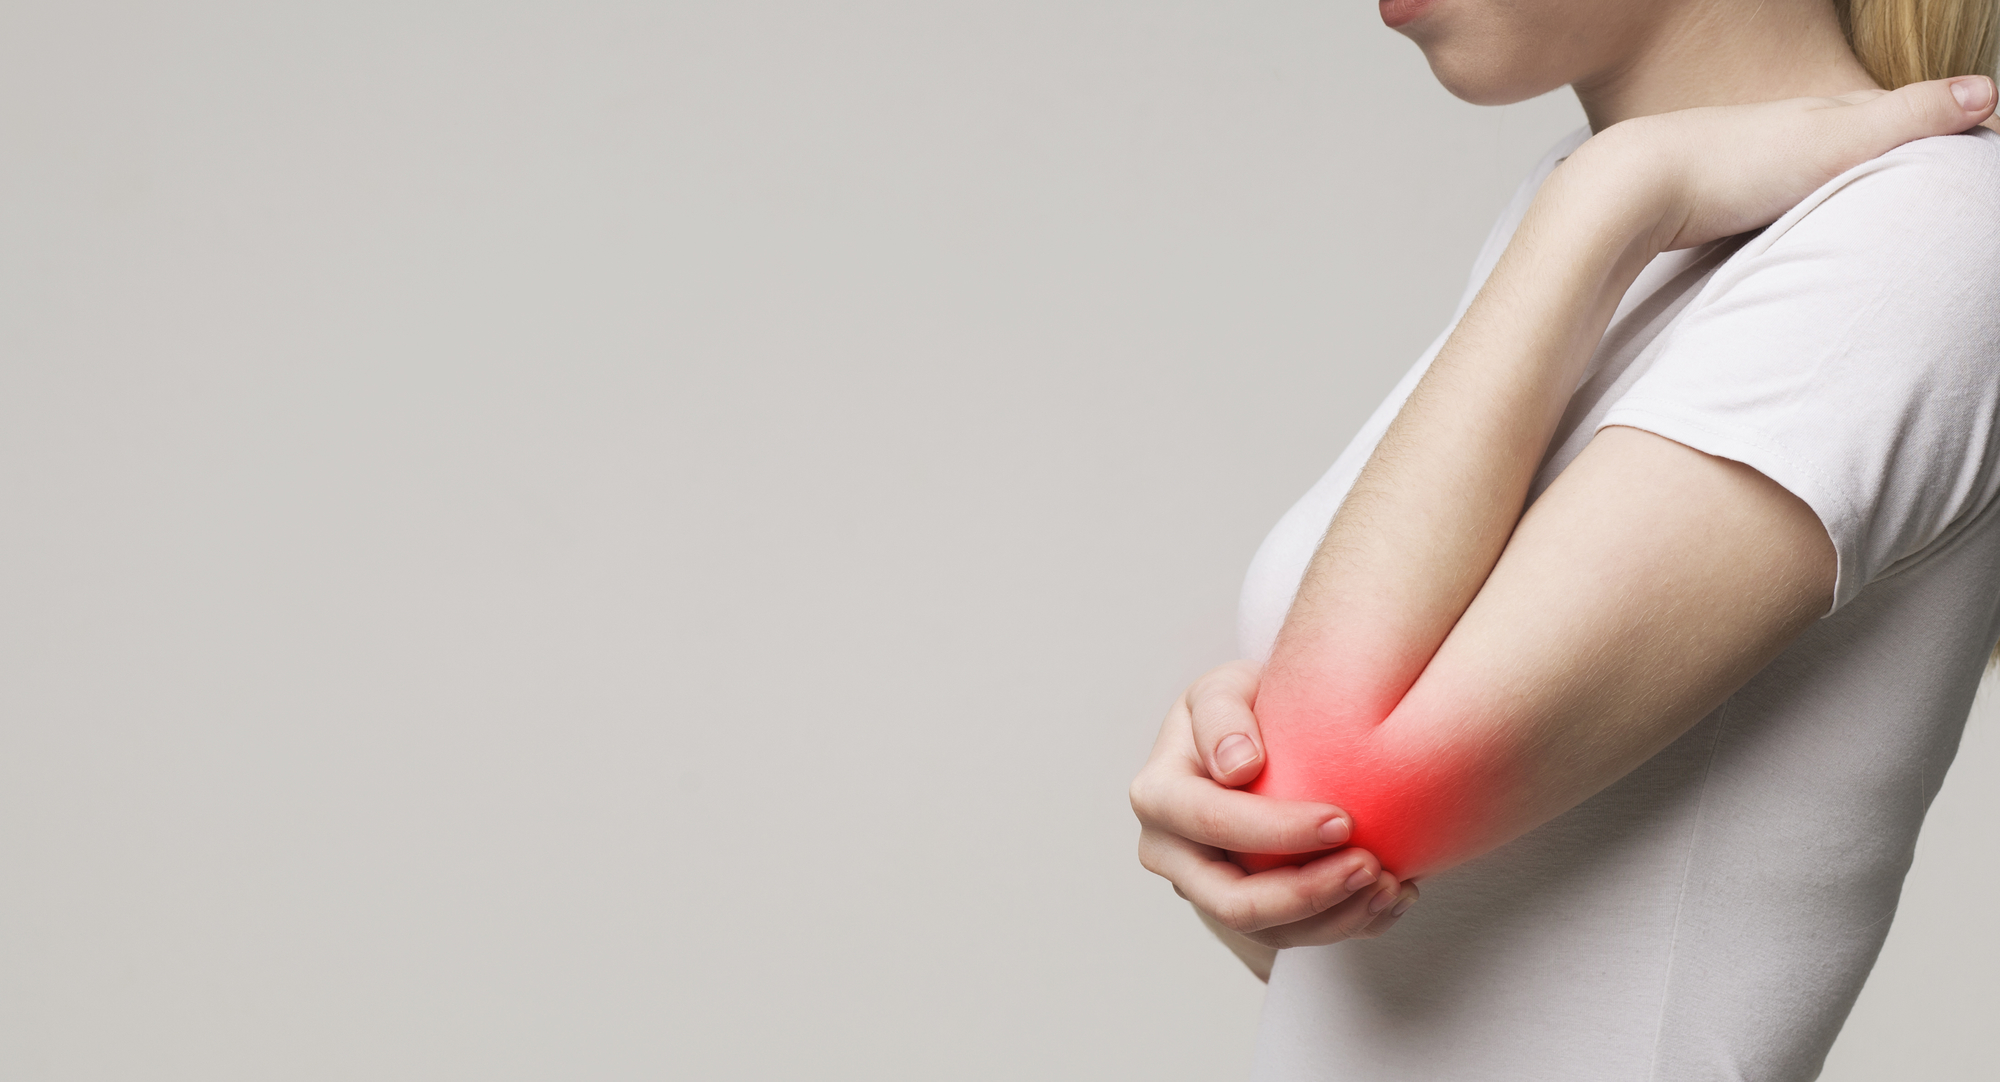 osteoartritis tretmana ramena bol tijekom fleksije i ekstenzije zgloba koljena